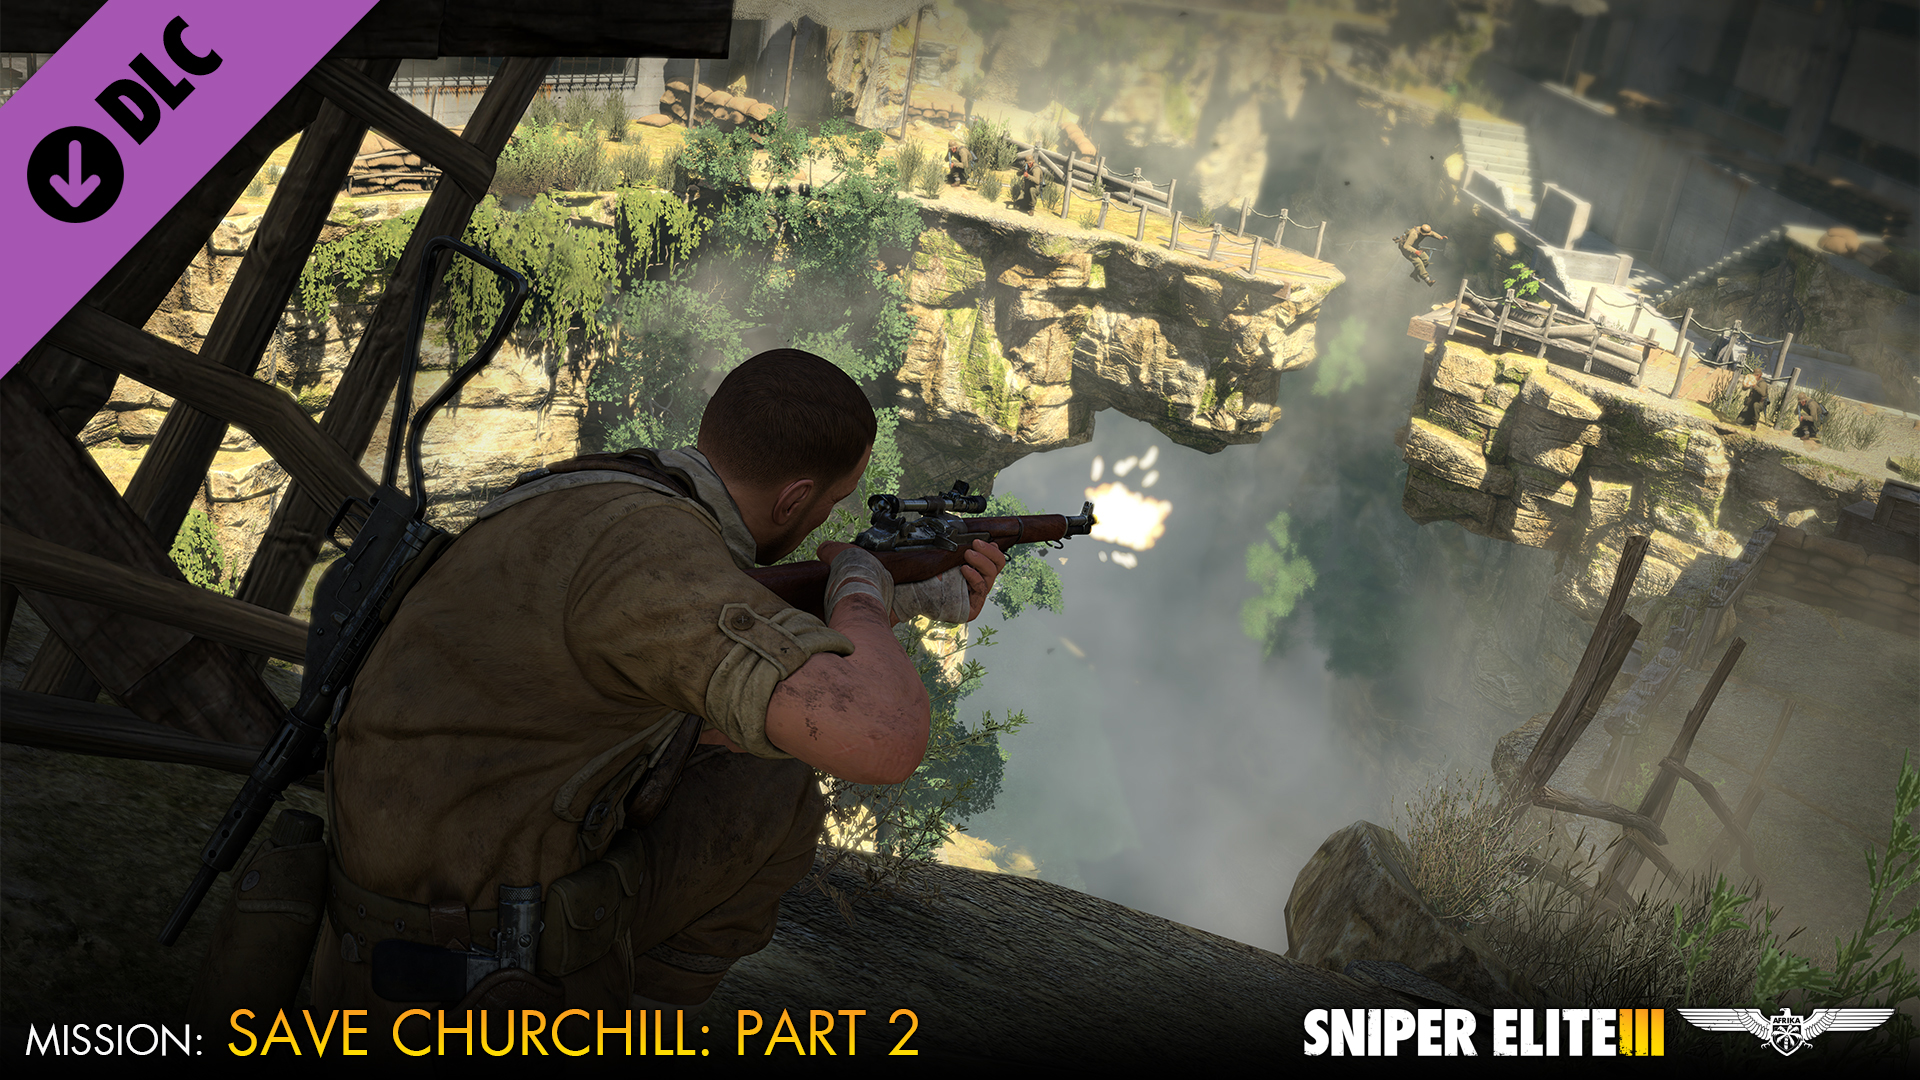 Sniper elite 3 mở chiến dịch 'Save Churchill' phần 2